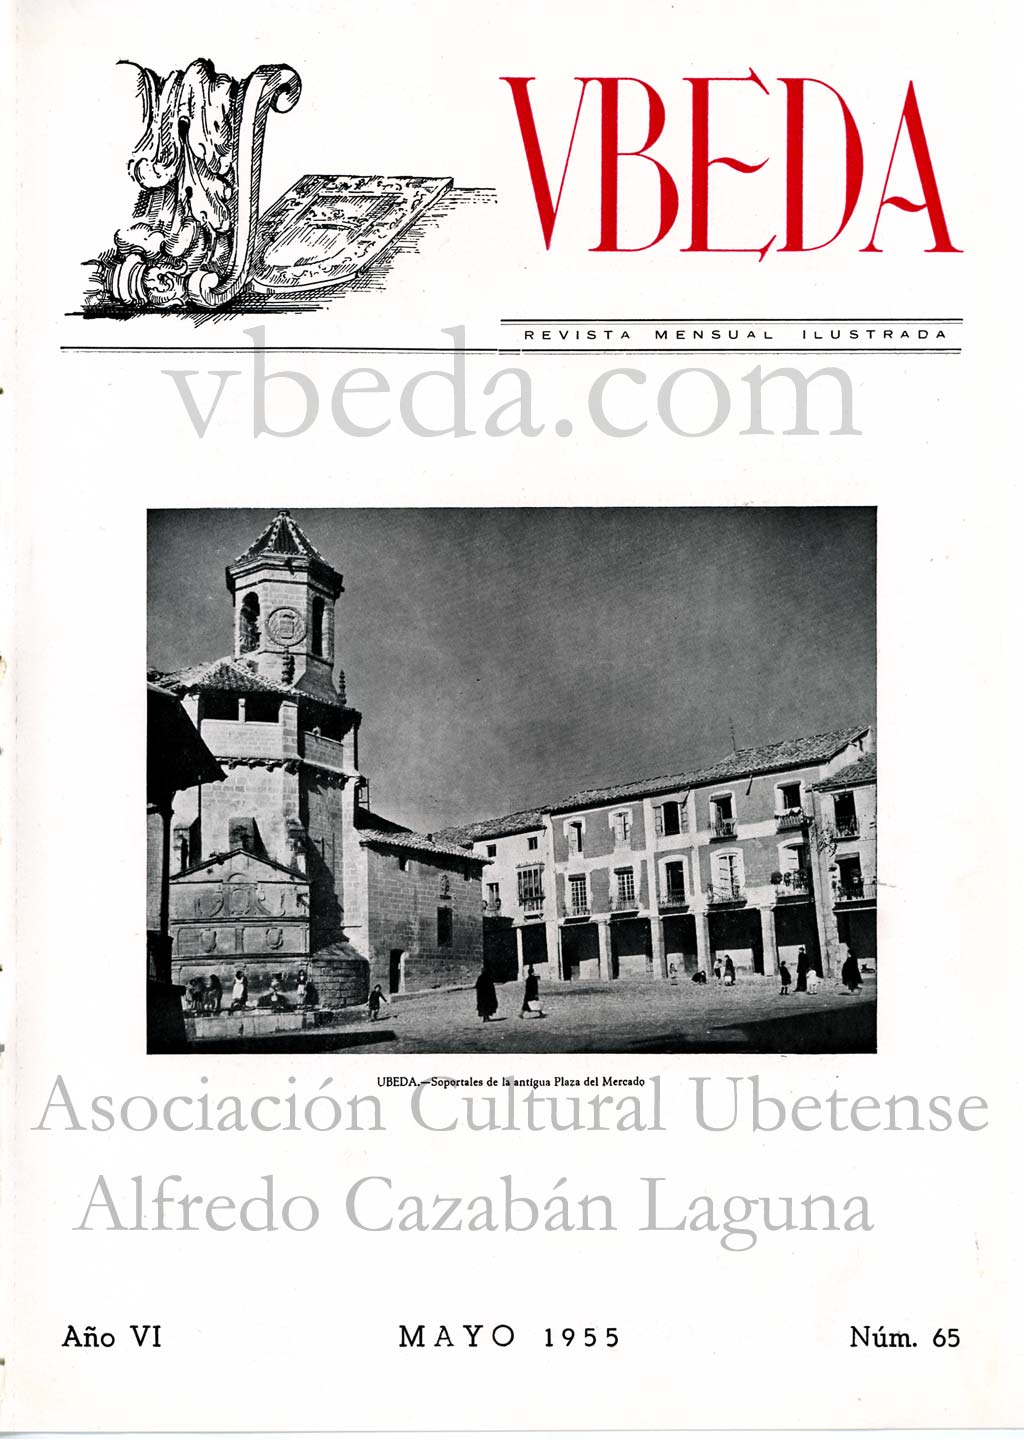 Revista Vbeda. Ao 6. N 65 de mayo de 1955